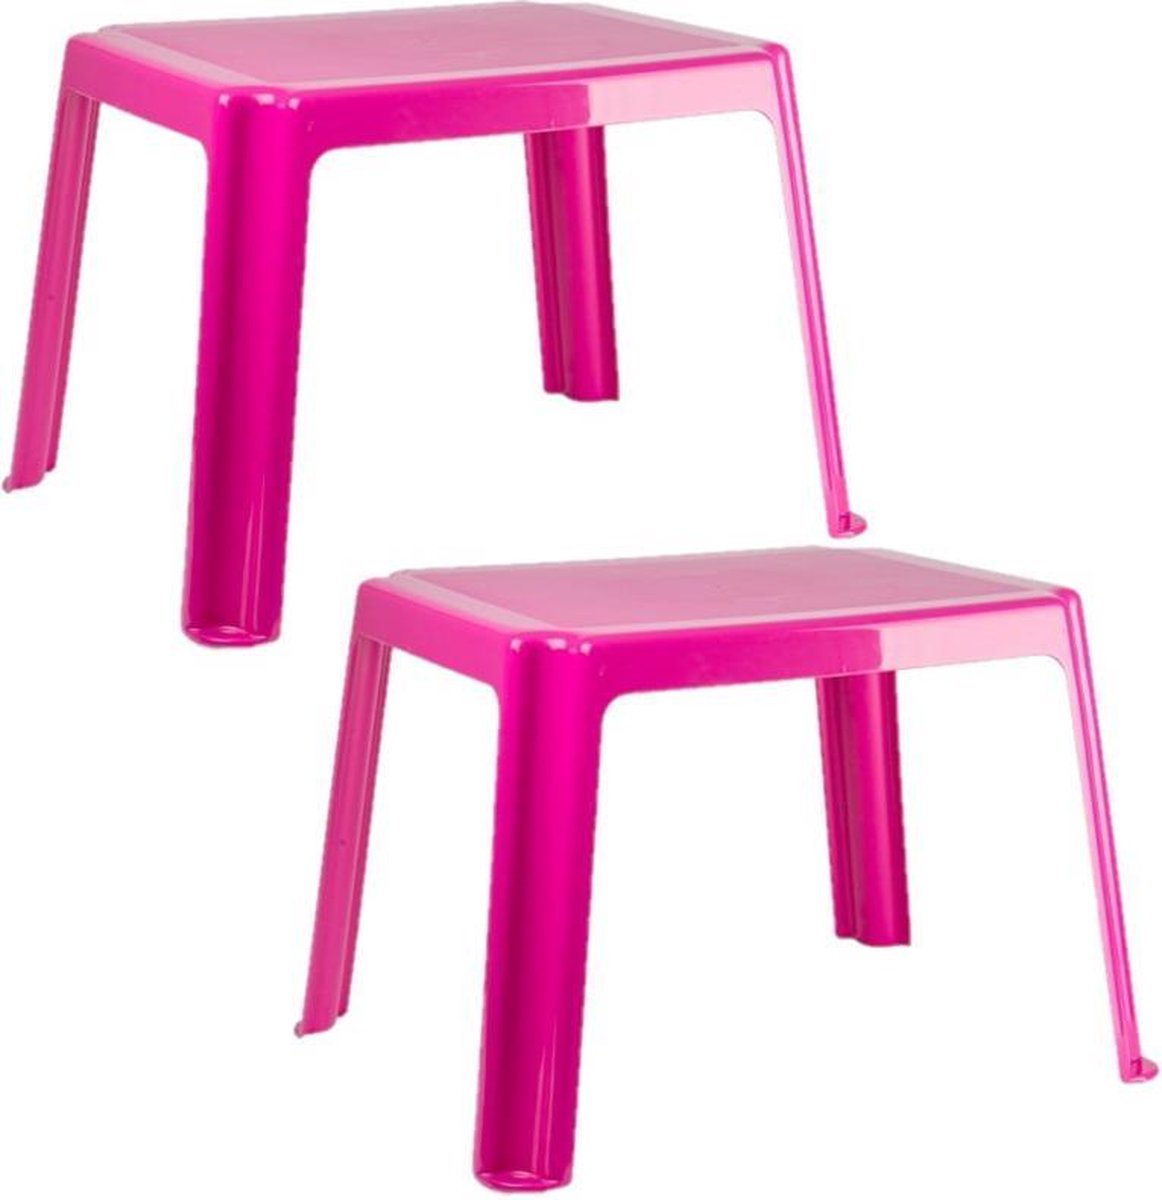 2x stuks kunststof kindertafels roze 55 x 66 x 43 cm - Kindertafel buiten - Bijzettafel